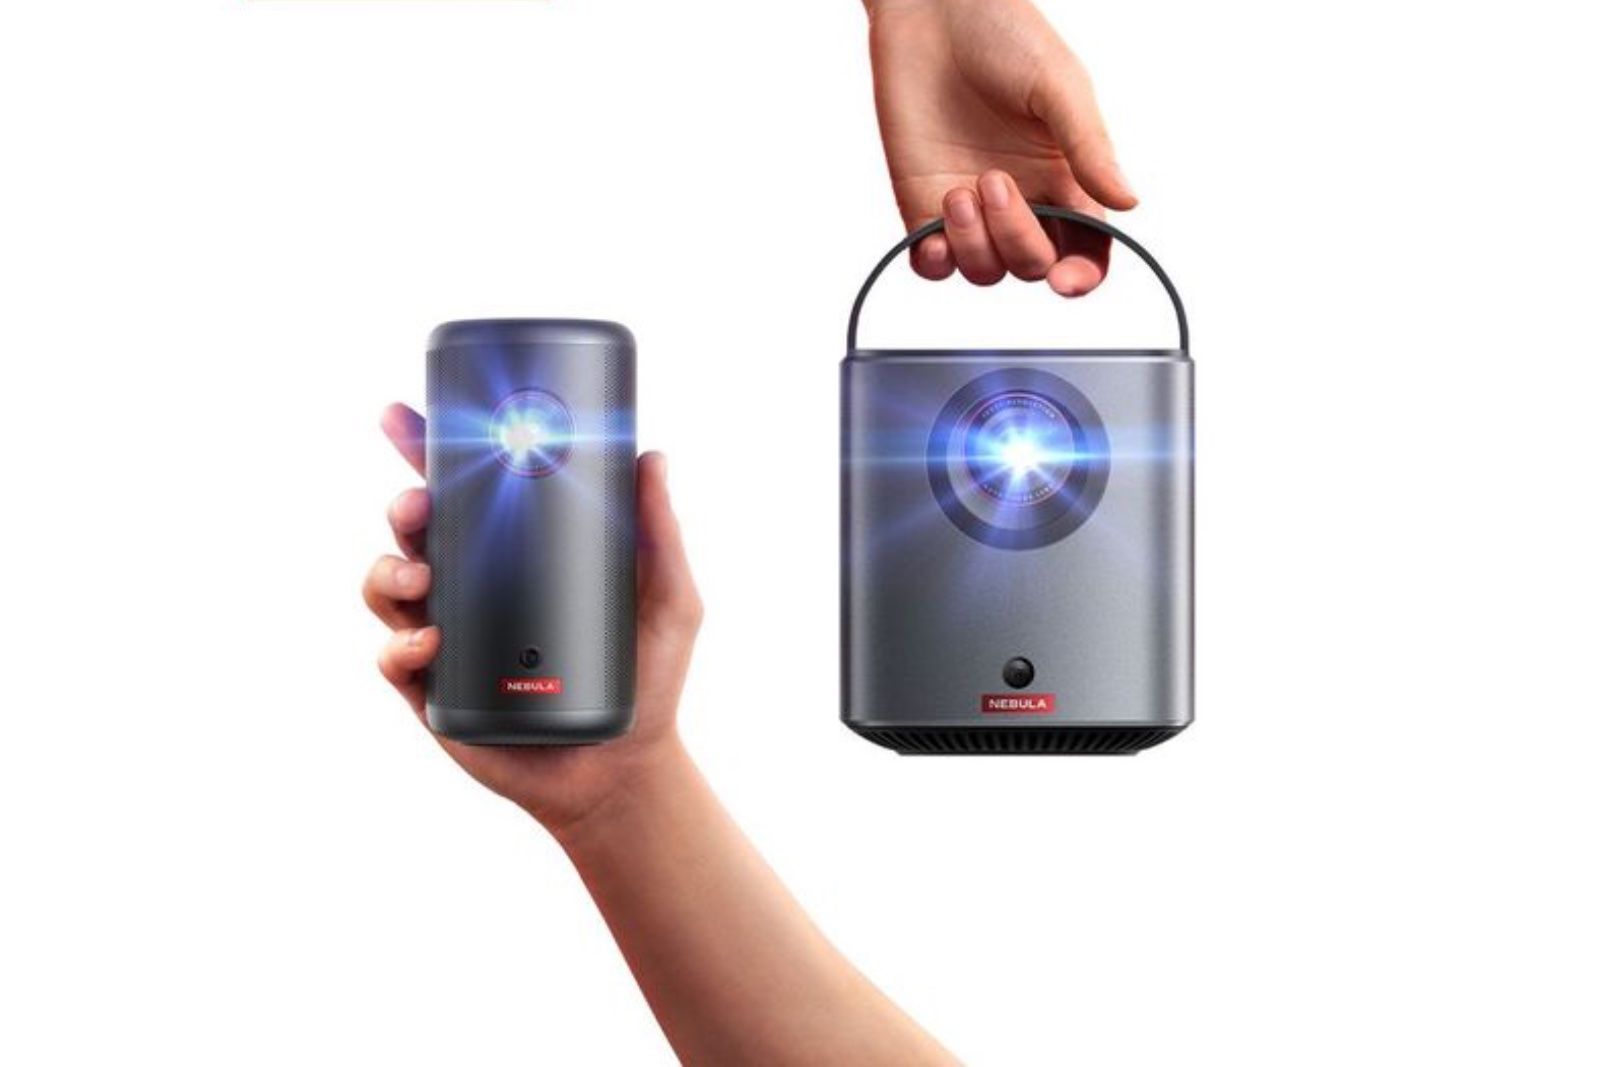 Nebula portable projectors